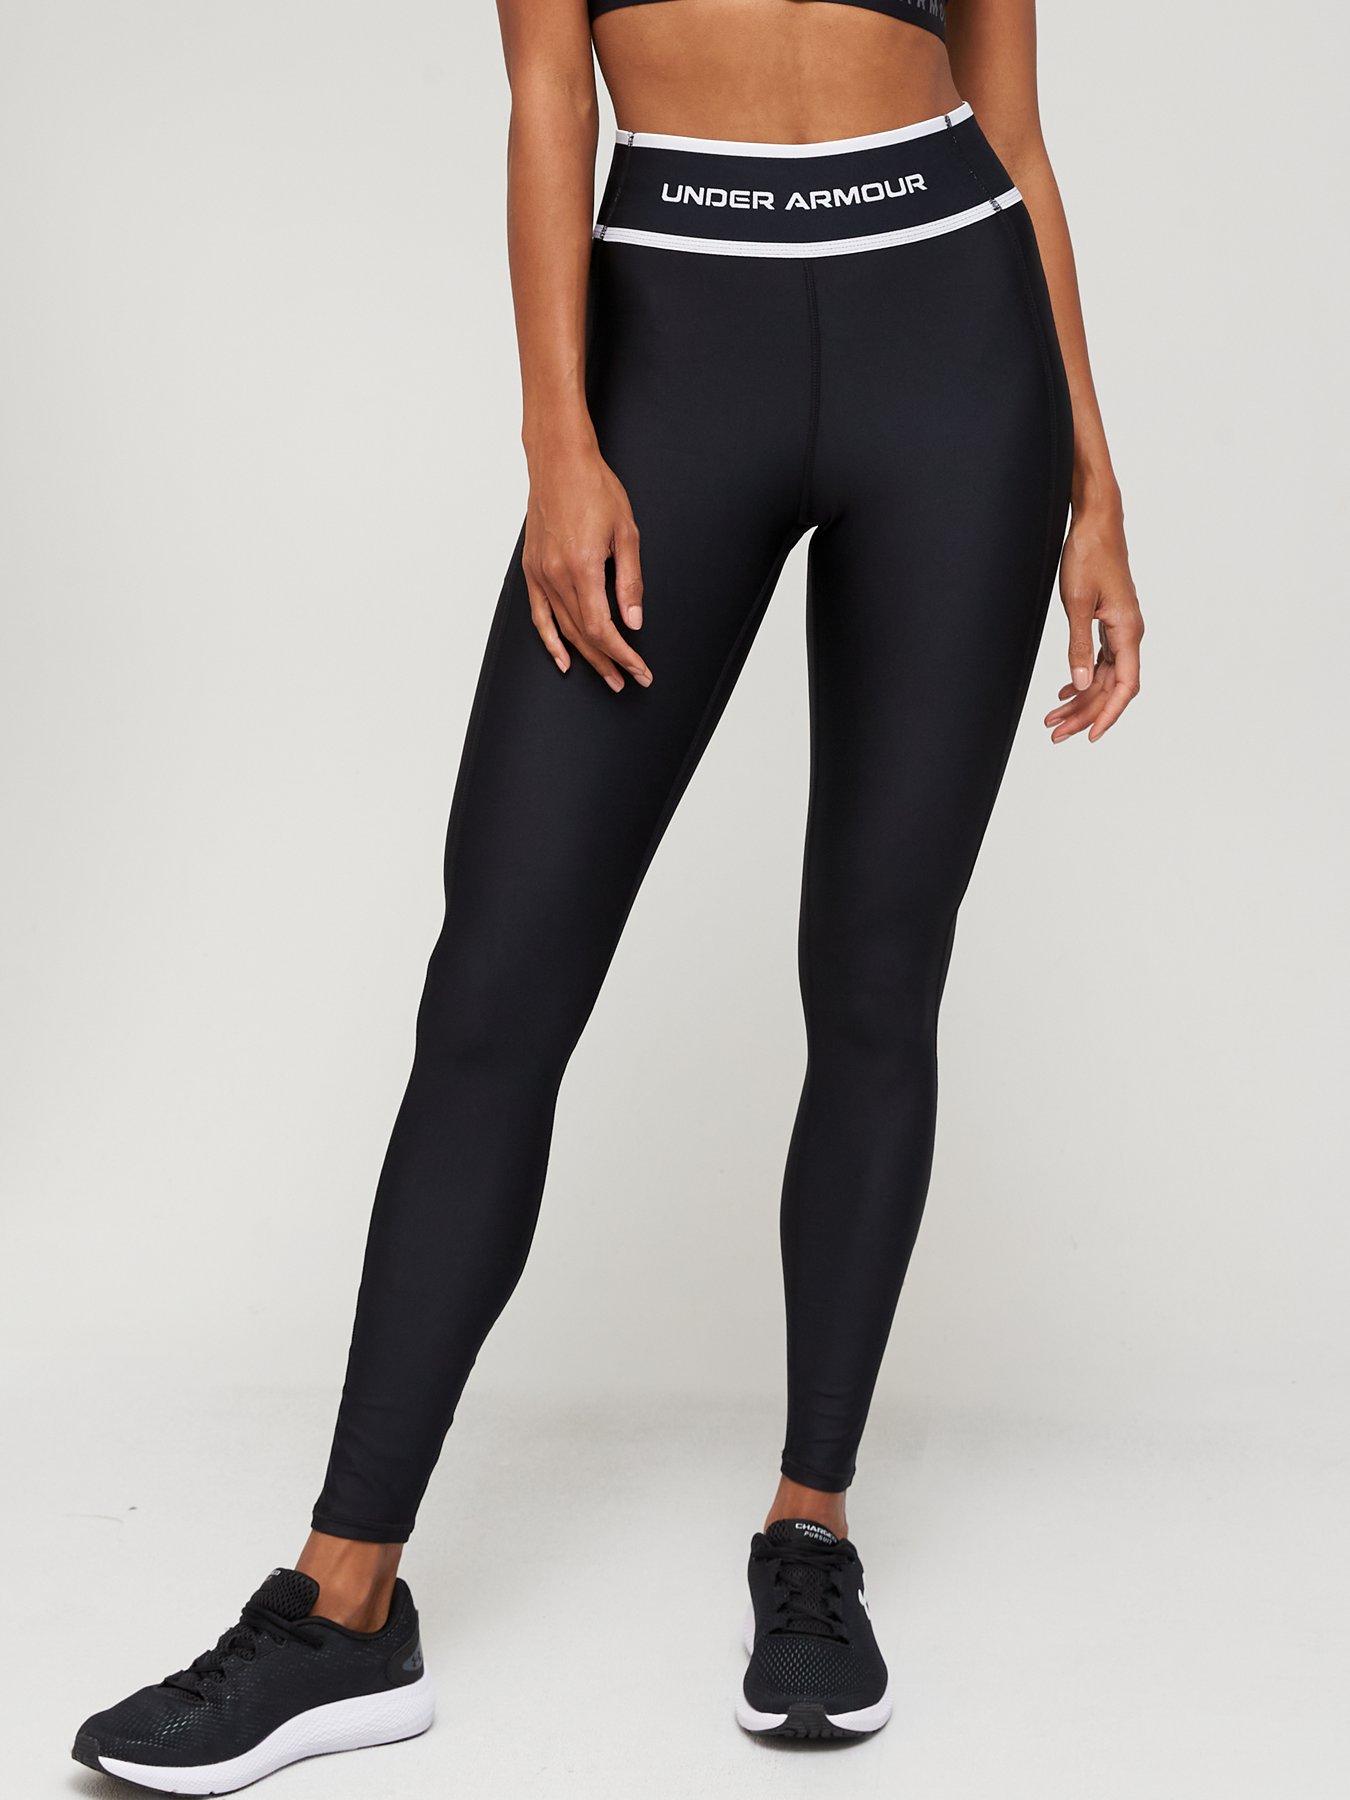 Under Armour Heatgear Capri Ladies 3/4 Tight Sports Pants Black Nip Size XS 